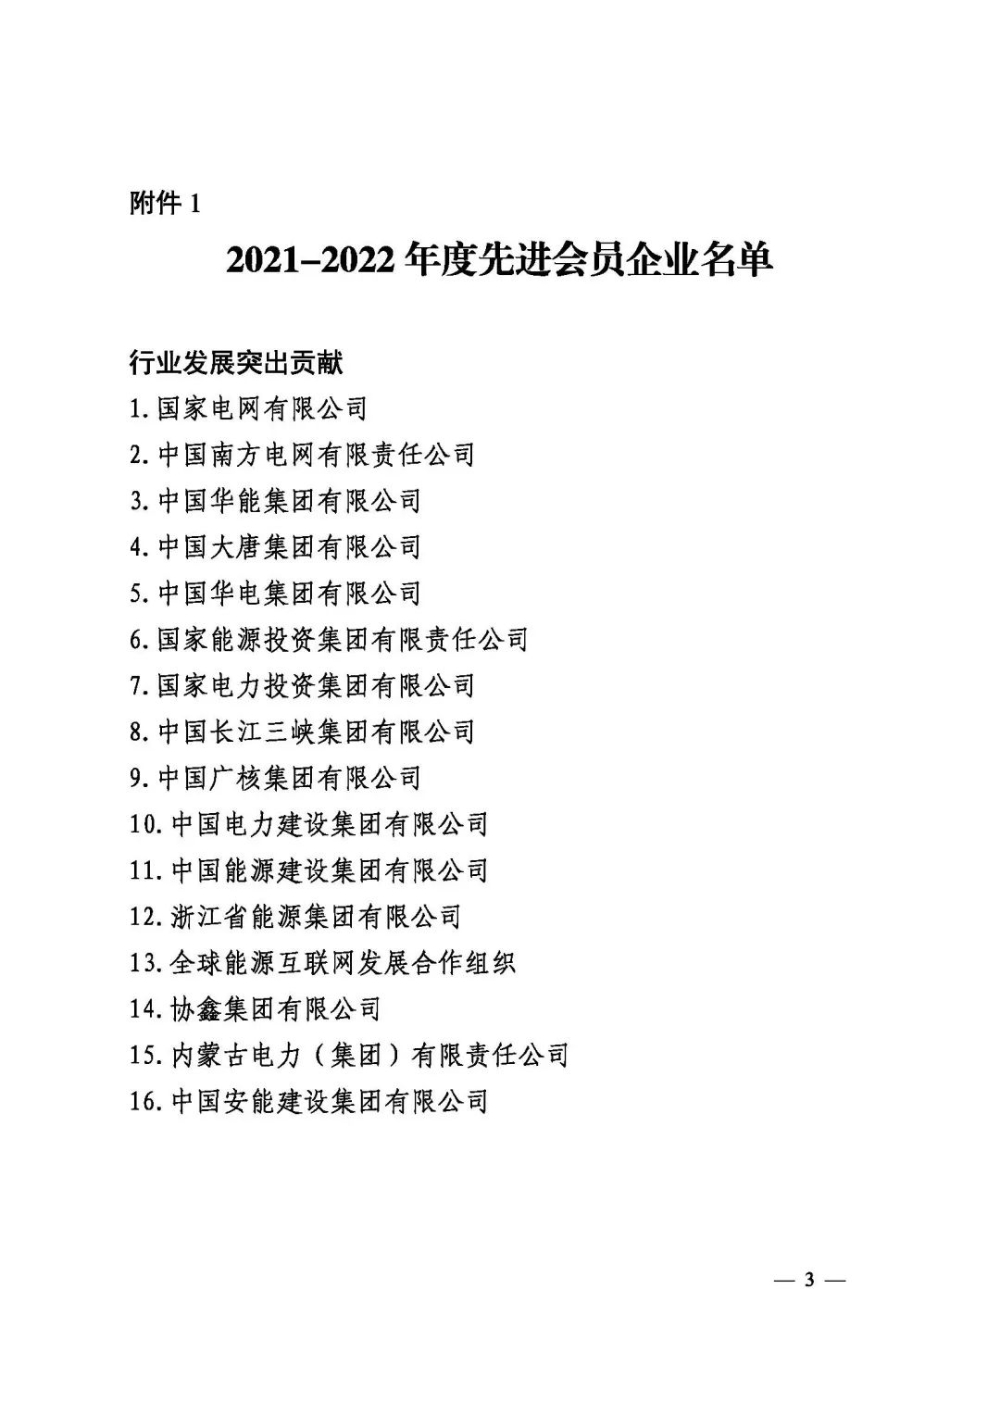 中电联表彰2021-2022年度先进会员企业、先进个人-5